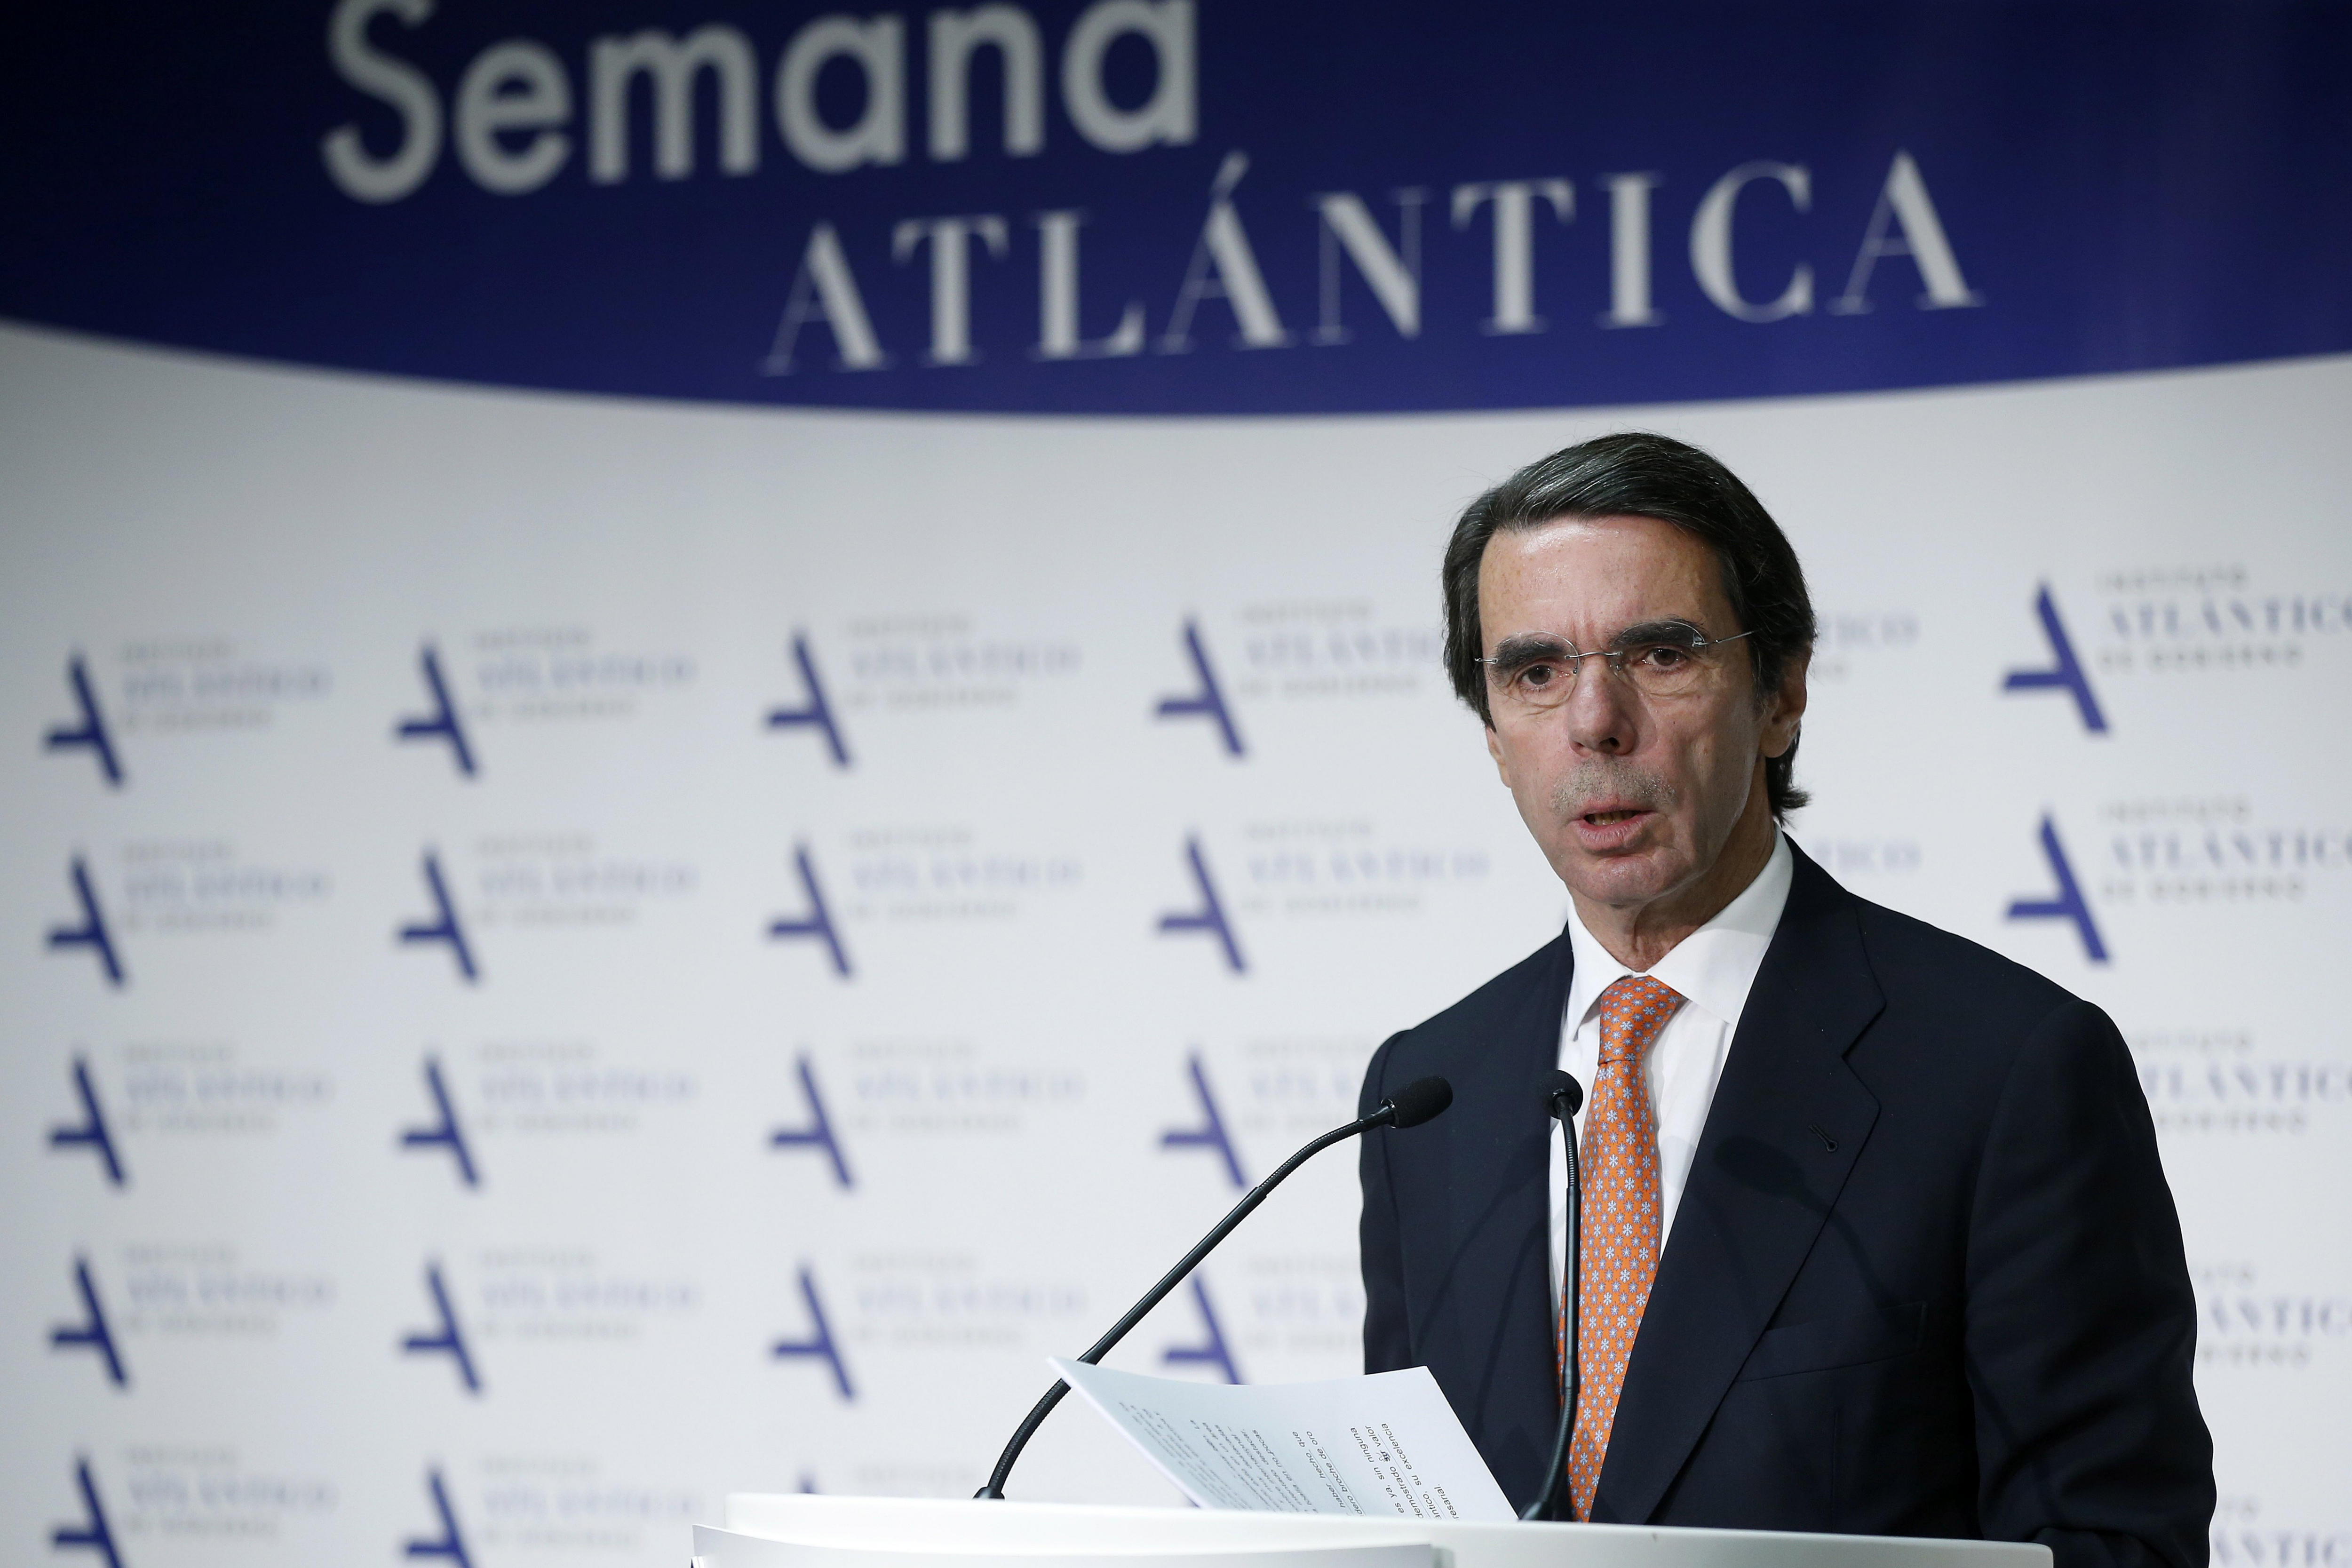 El ex jefe del Ejecutivo José María Aznar en la I Semana Atlántica organizada por el Instituto Atlántico de Gobierno que preside